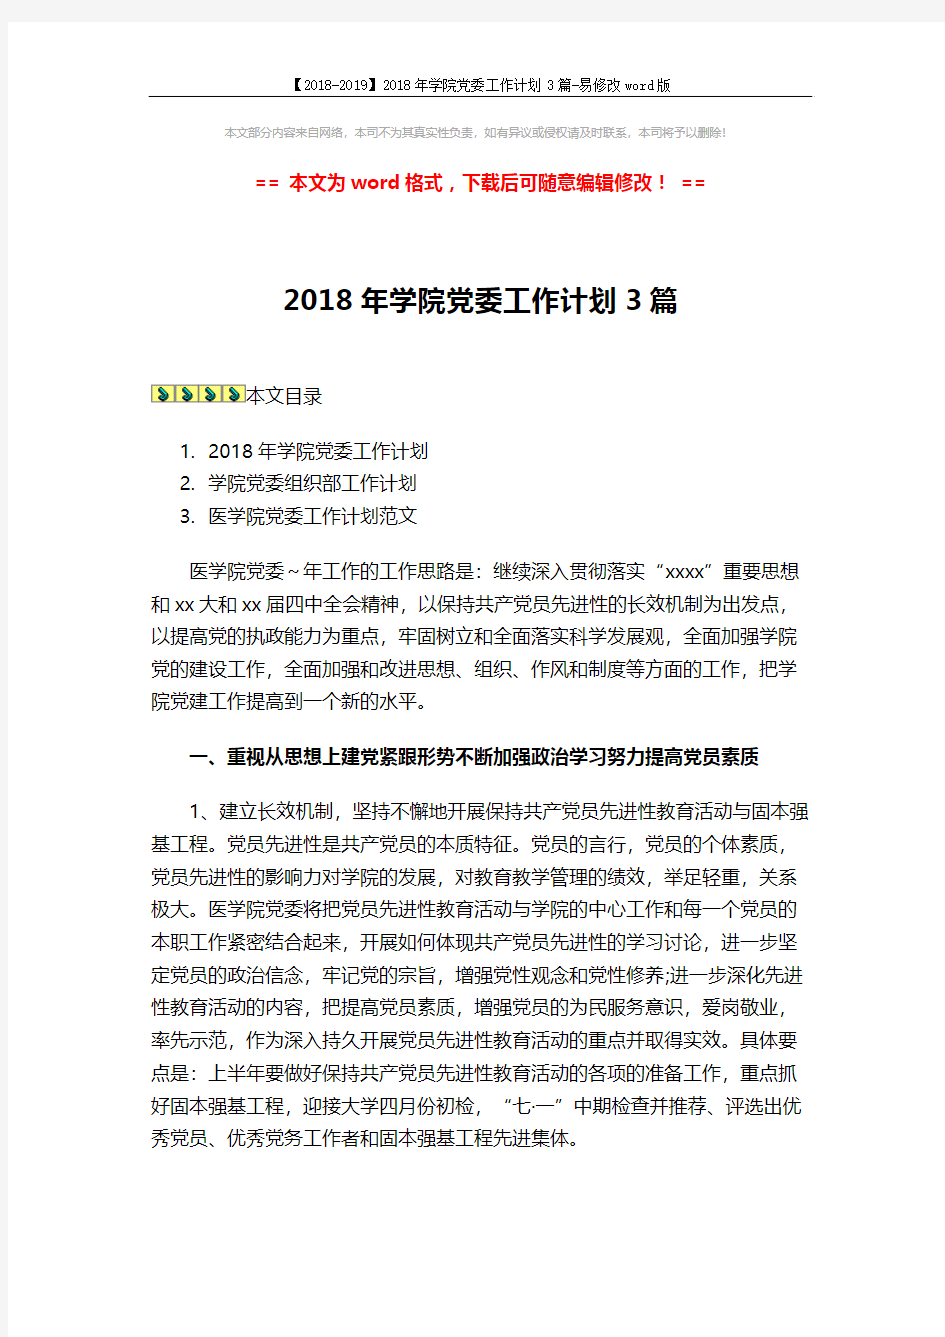 【2018-2019】2018年学院党委工作计划3篇-易修改word版 (13页)